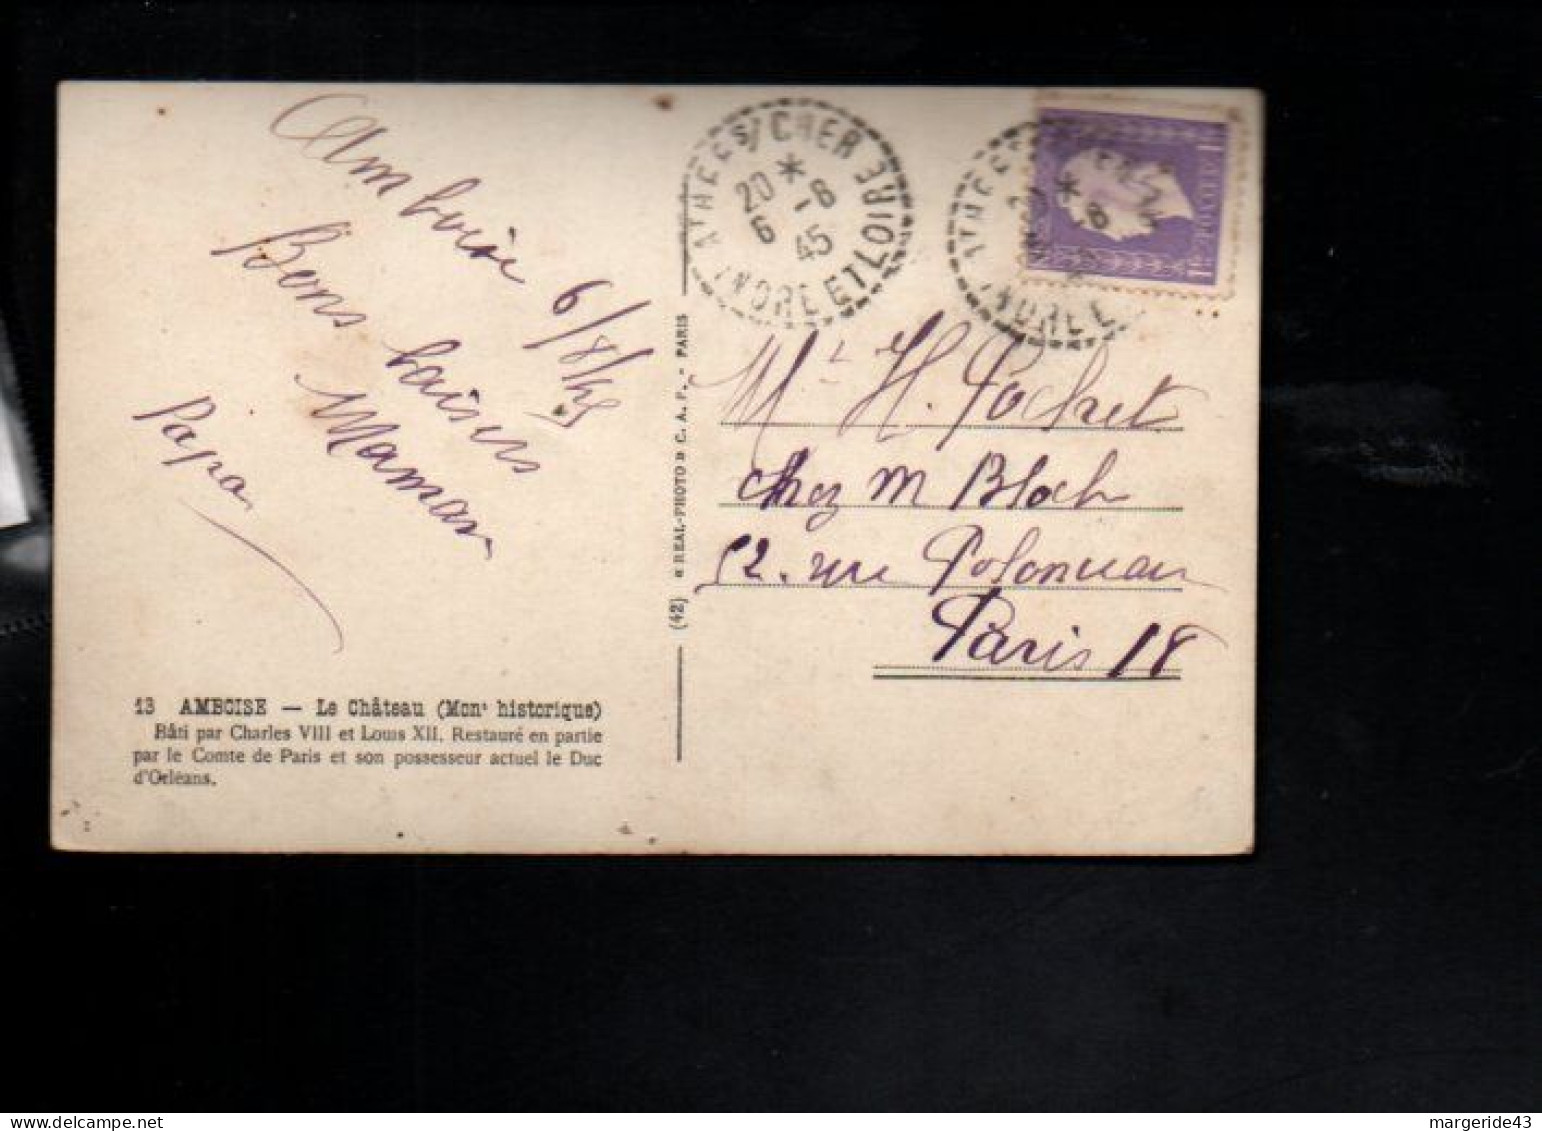 DULAC SUR CARTE DE ATHEES SUR CHER INDRE ET LOIRE 1945 - Manual Postmarks